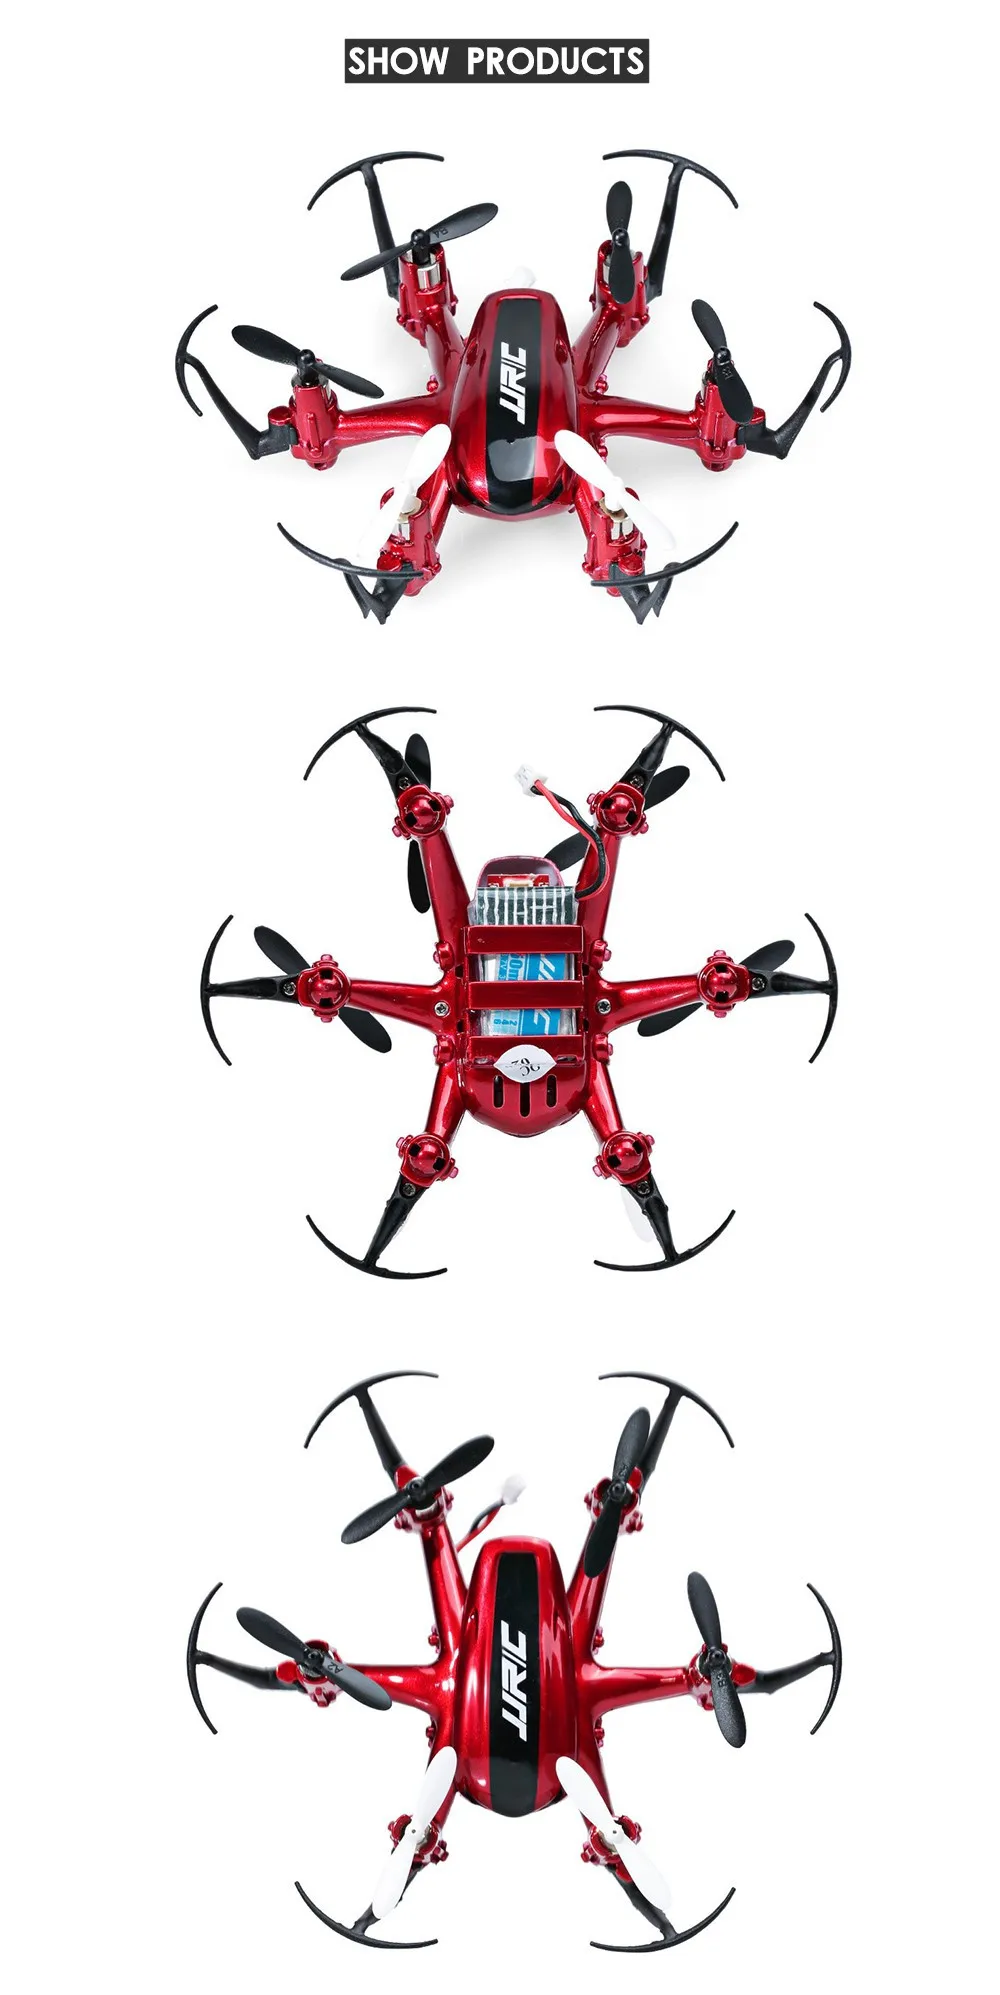 Jjrc H20 мини Радиоуправляемый Дрон 6 оси Дрон Micro quadcopters Профессиональный дроны Hexacopter headless режим вертолет Радиоуправляемые игрушки